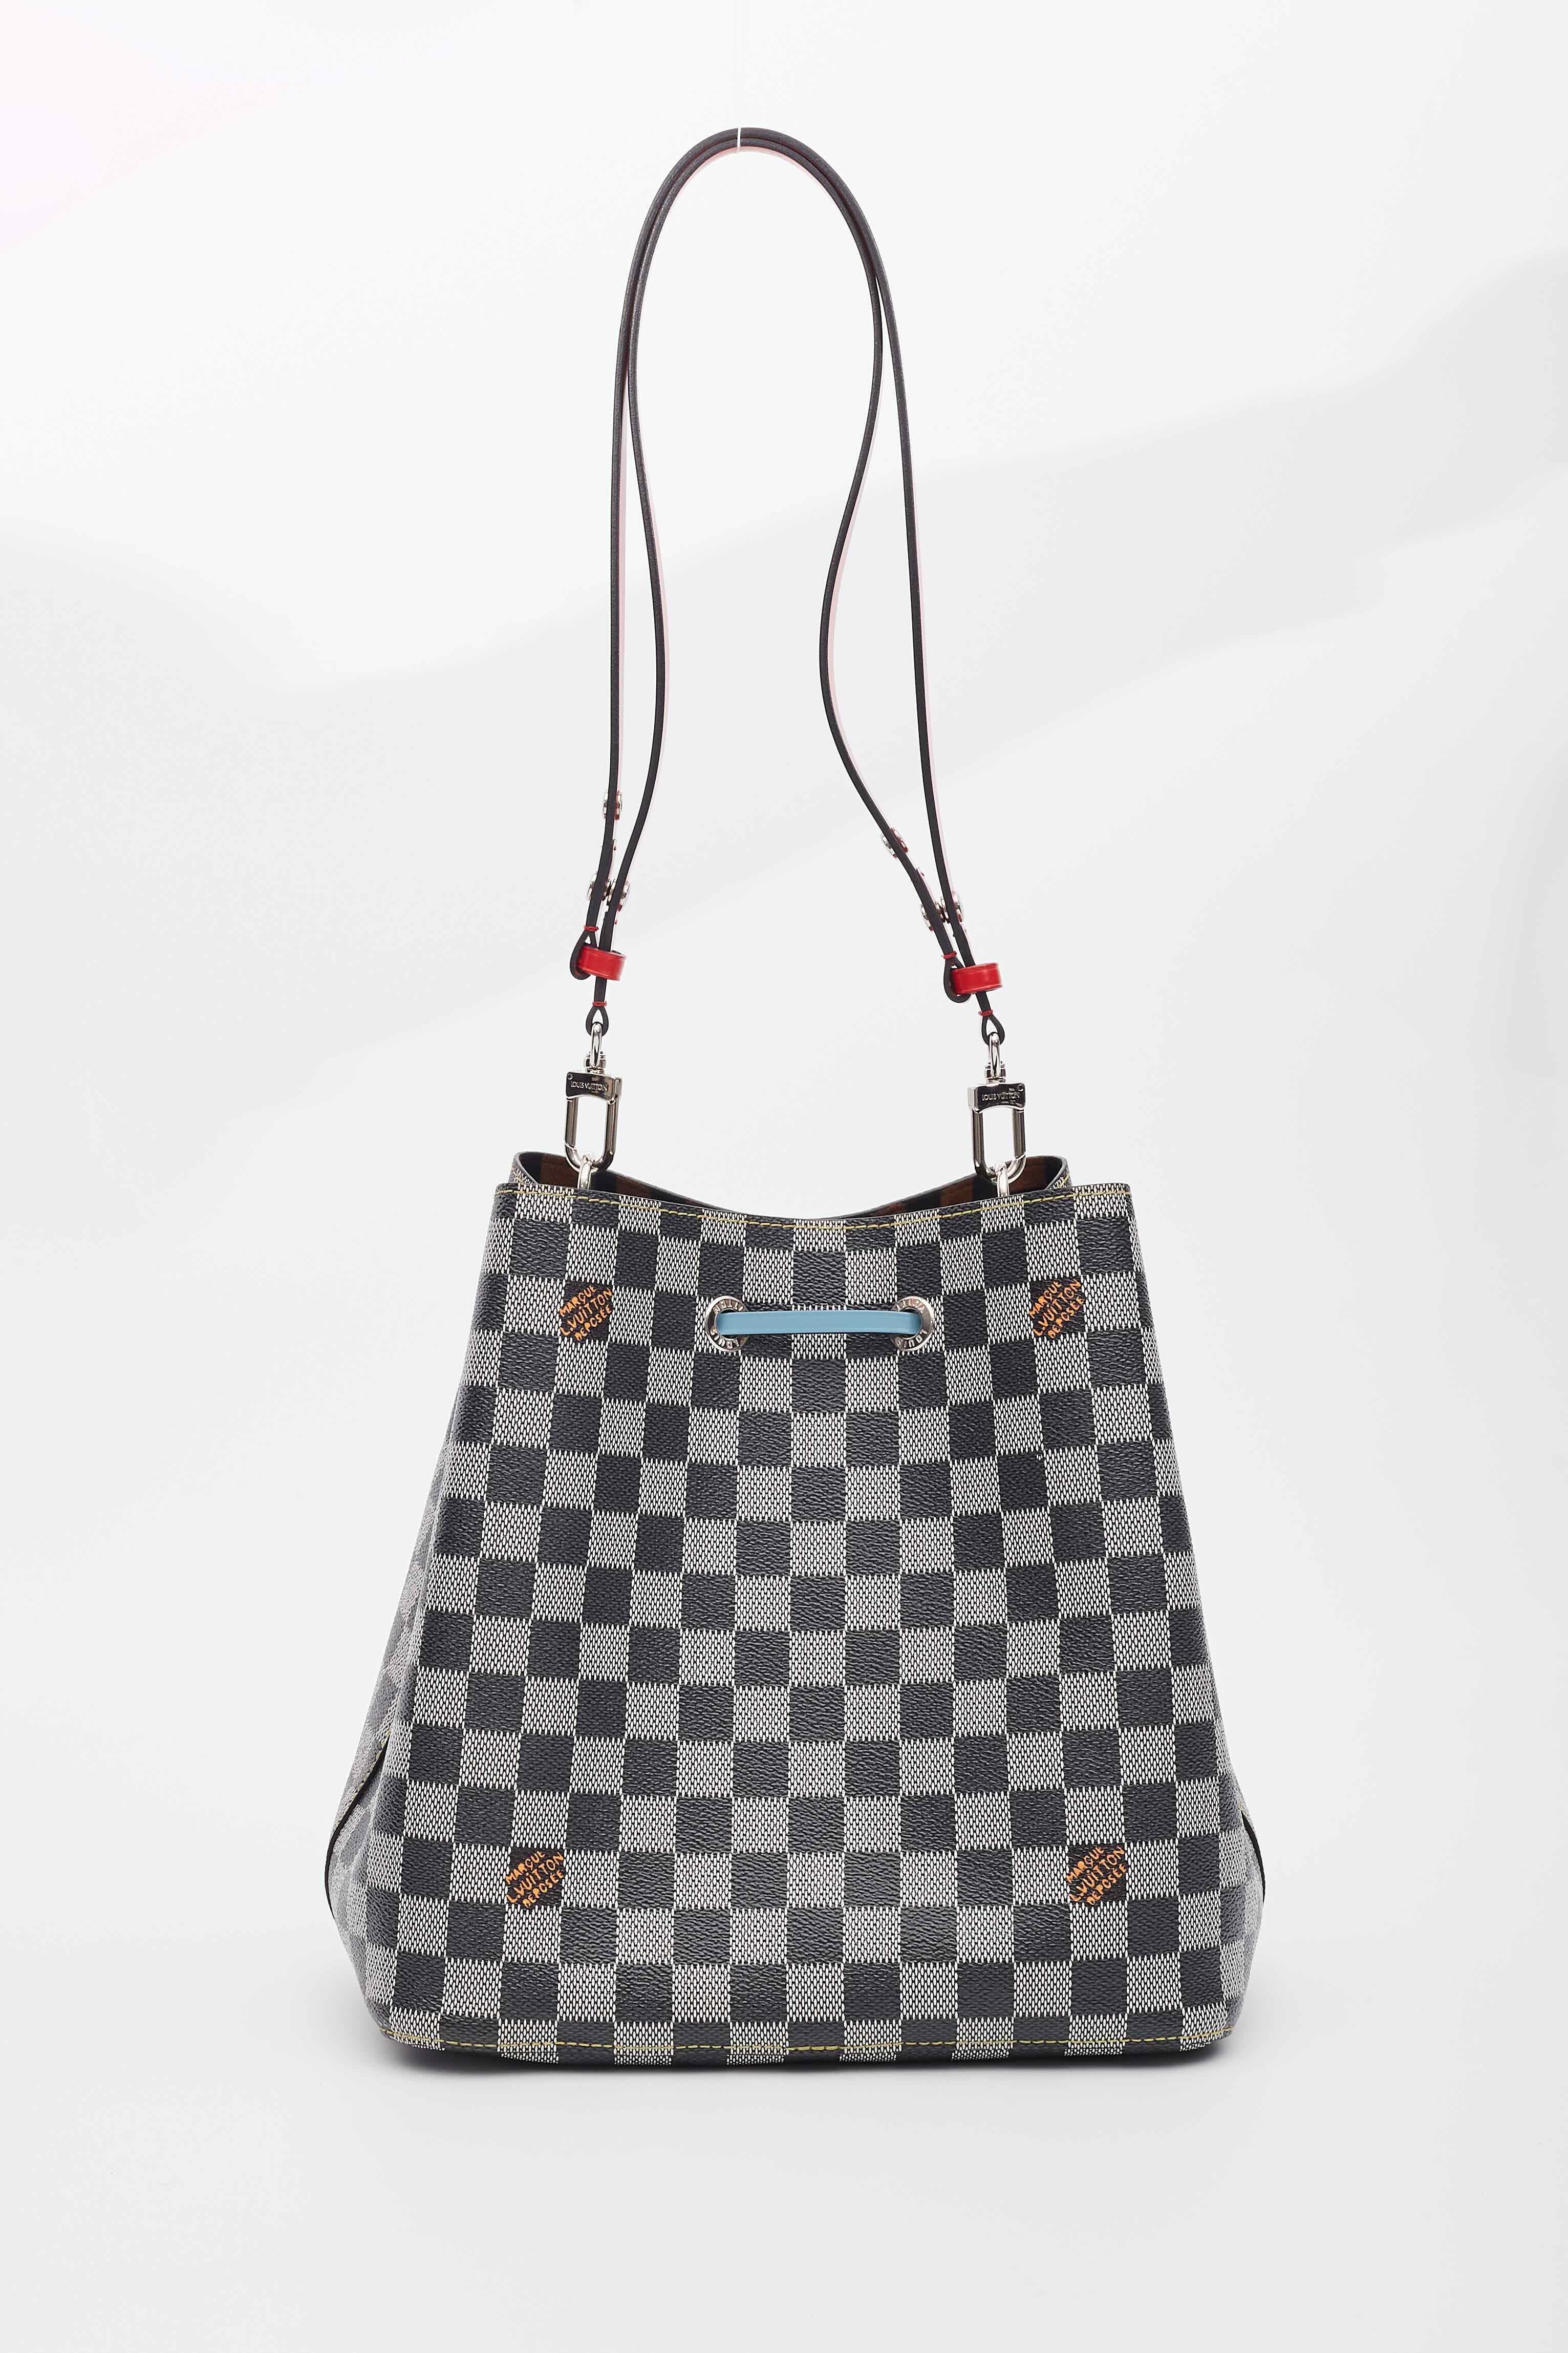 Louis Vuitton Black White Néonoé Mm Drawstring Shoulder Bag For Sale 6